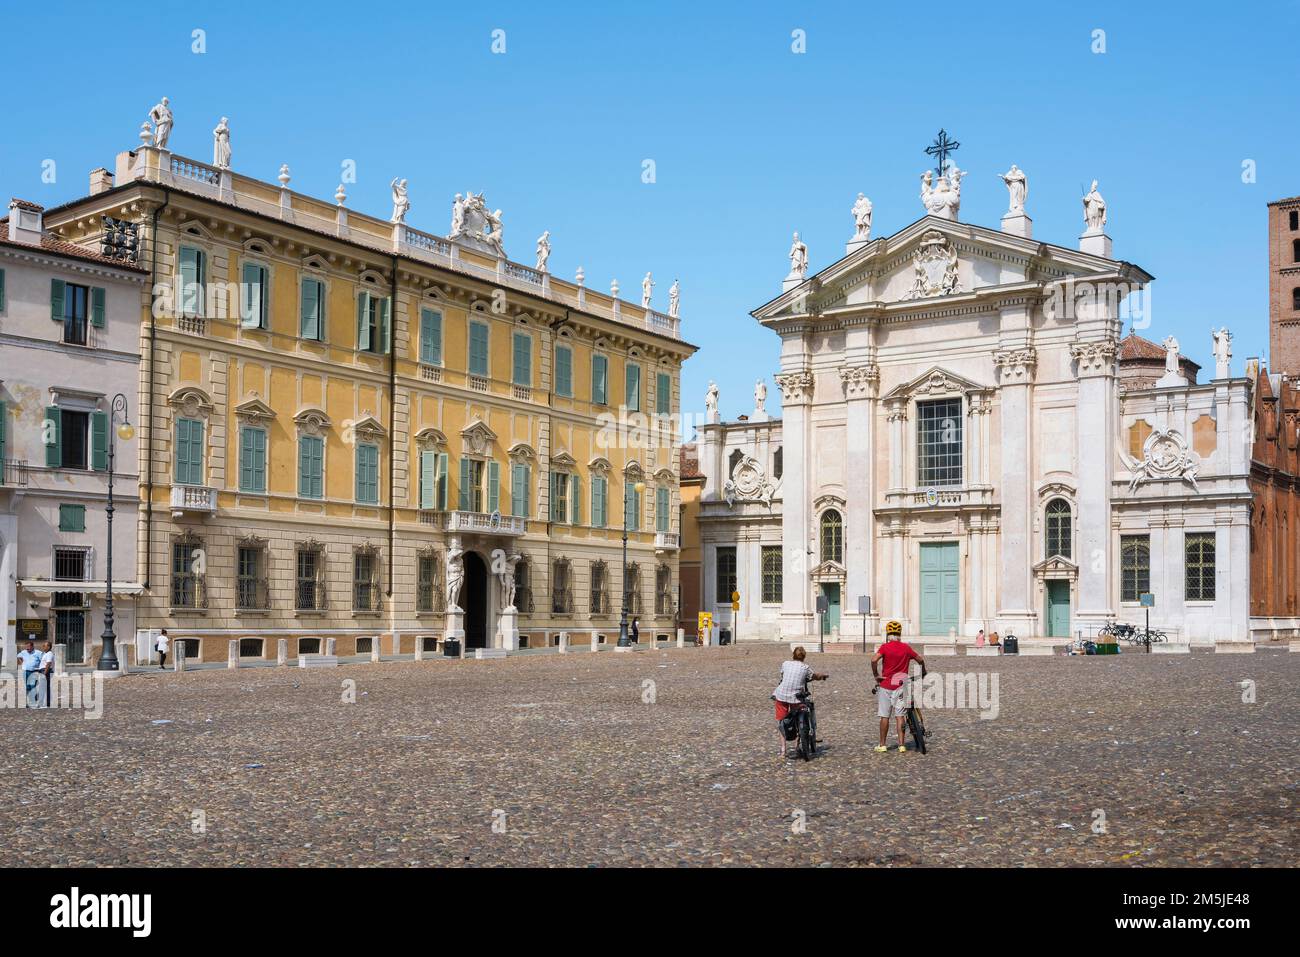 Radurlaub, Blick im Sommer auf ein erfahrenes Fahrradpaar, das auf der Piazza Sordello in Mantua pausiert, um die barocke Fassade des Doms in Italien zu erkunden Stockfoto